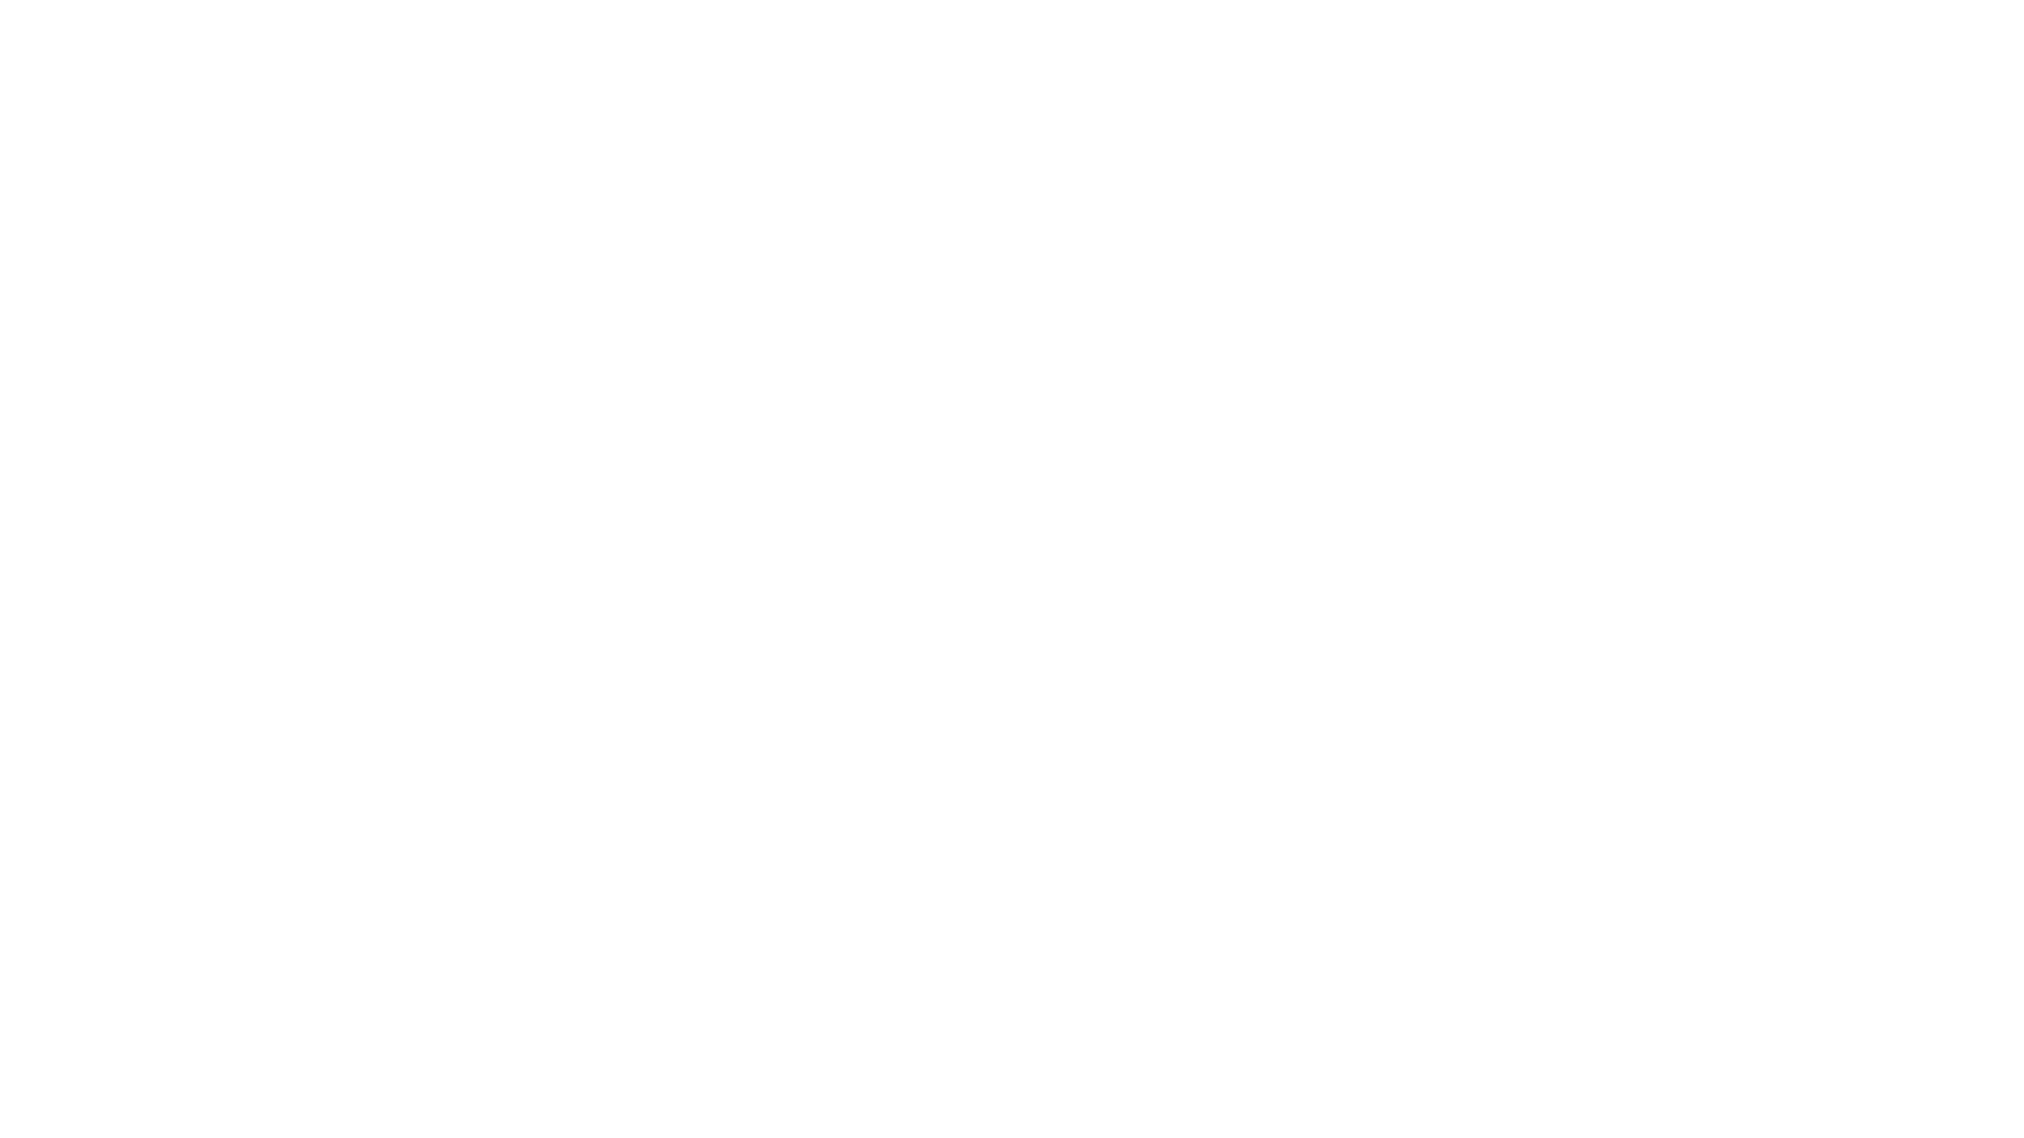 SEMA2017 - WHITE.png